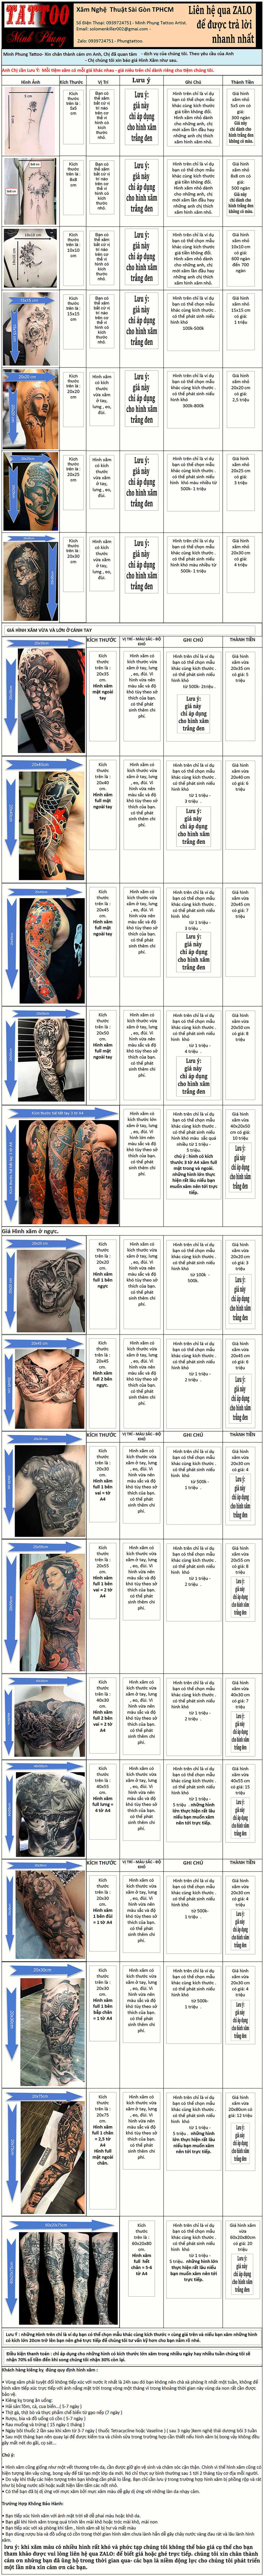 Xăm hình nghệ thuật giá tốt rẻ đẹp nhất hcm tattoo dung saigon rồng cánh  tay vai ngực cá chép  Lunge Cánh tay Mắt